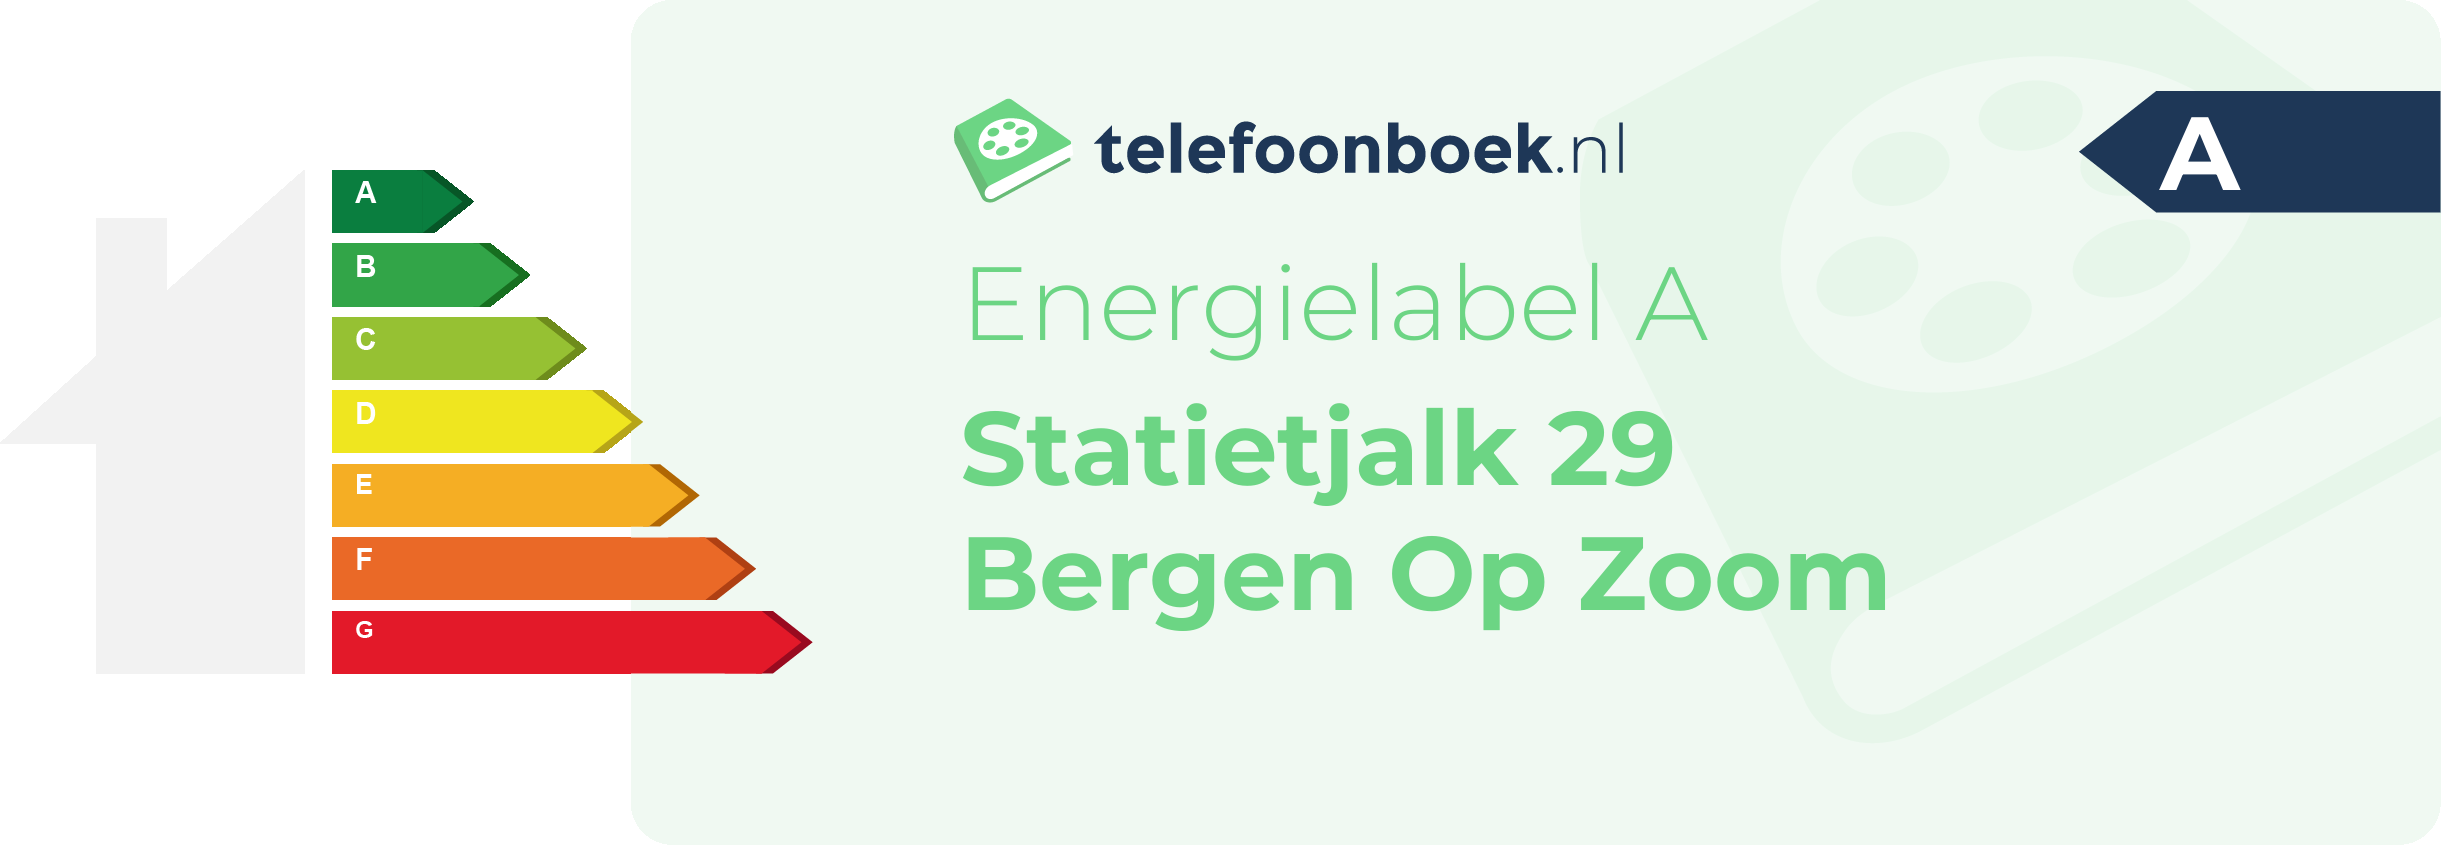 Energielabel Statietjalk 29 Bergen Op Zoom